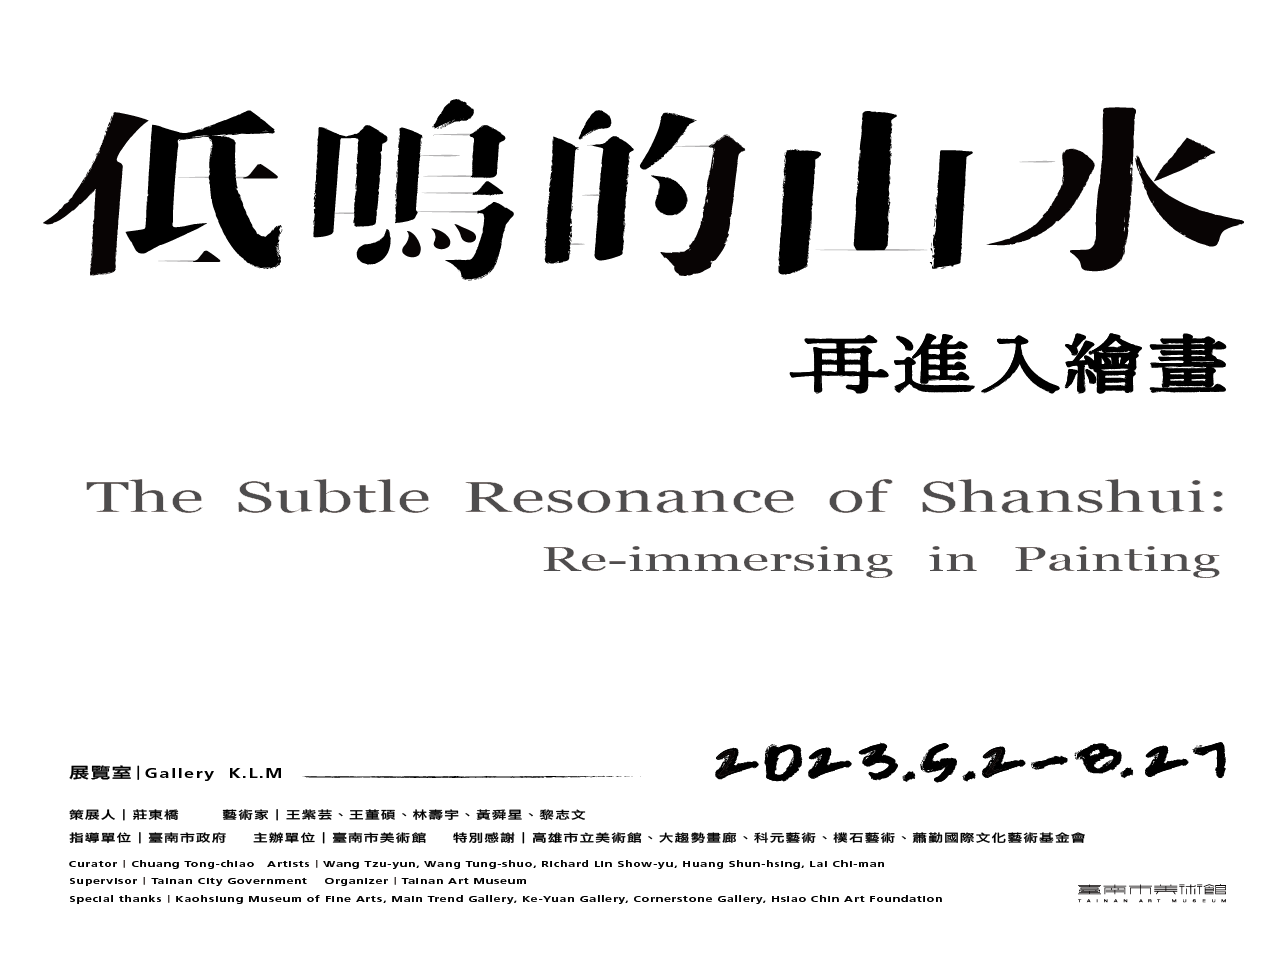 「低鳴的山水：再進入繪畫」The Subtle Resonance of Shanshui: Re-immersing in Painting